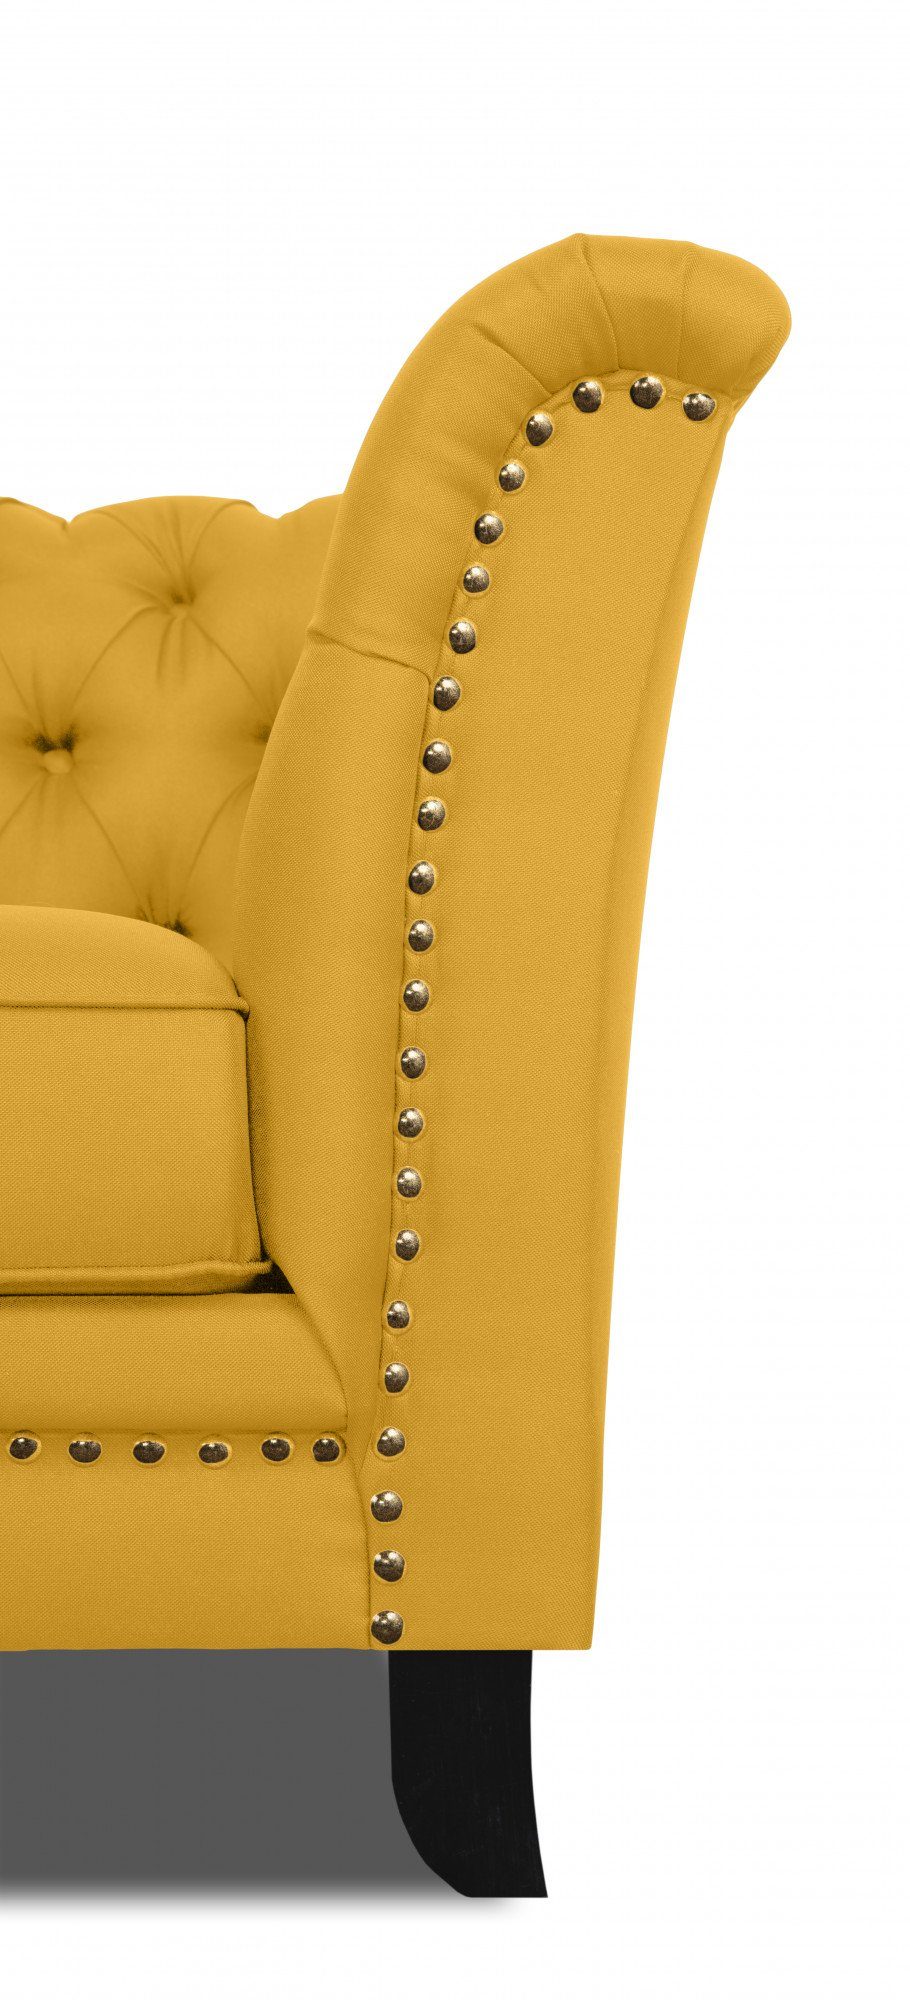 Sessel und Knopfheftung typischer Nietenbesatz mit Chesterfield Design Leonique Lynelle,